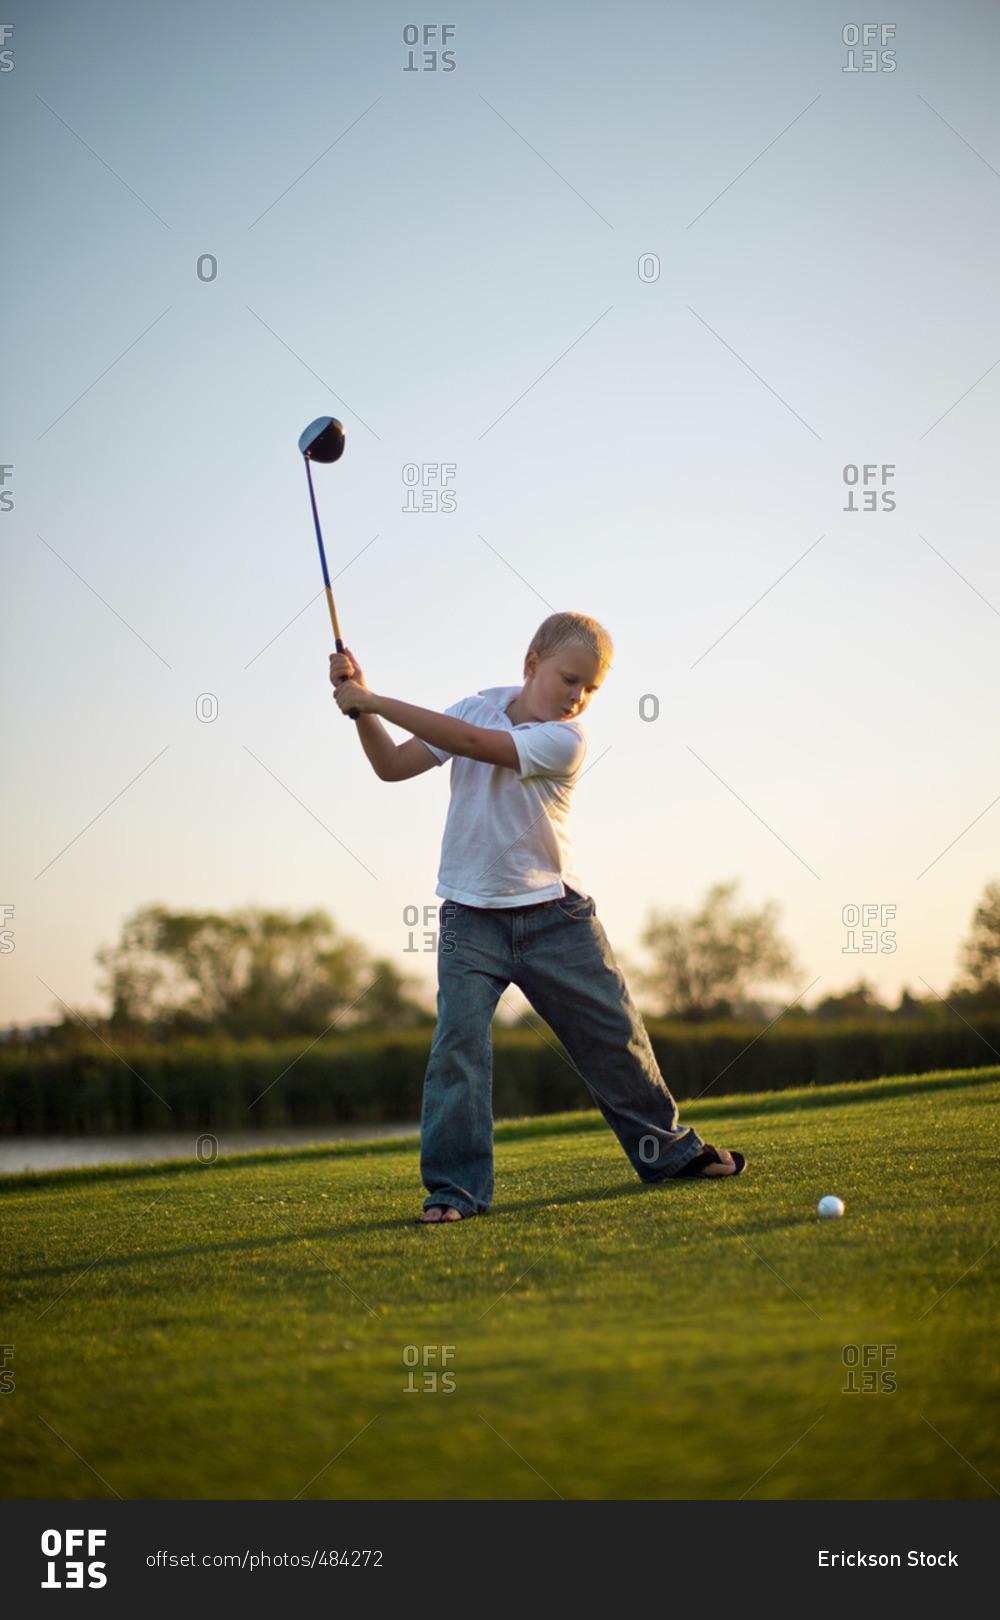 Young boy swinging a golf club.